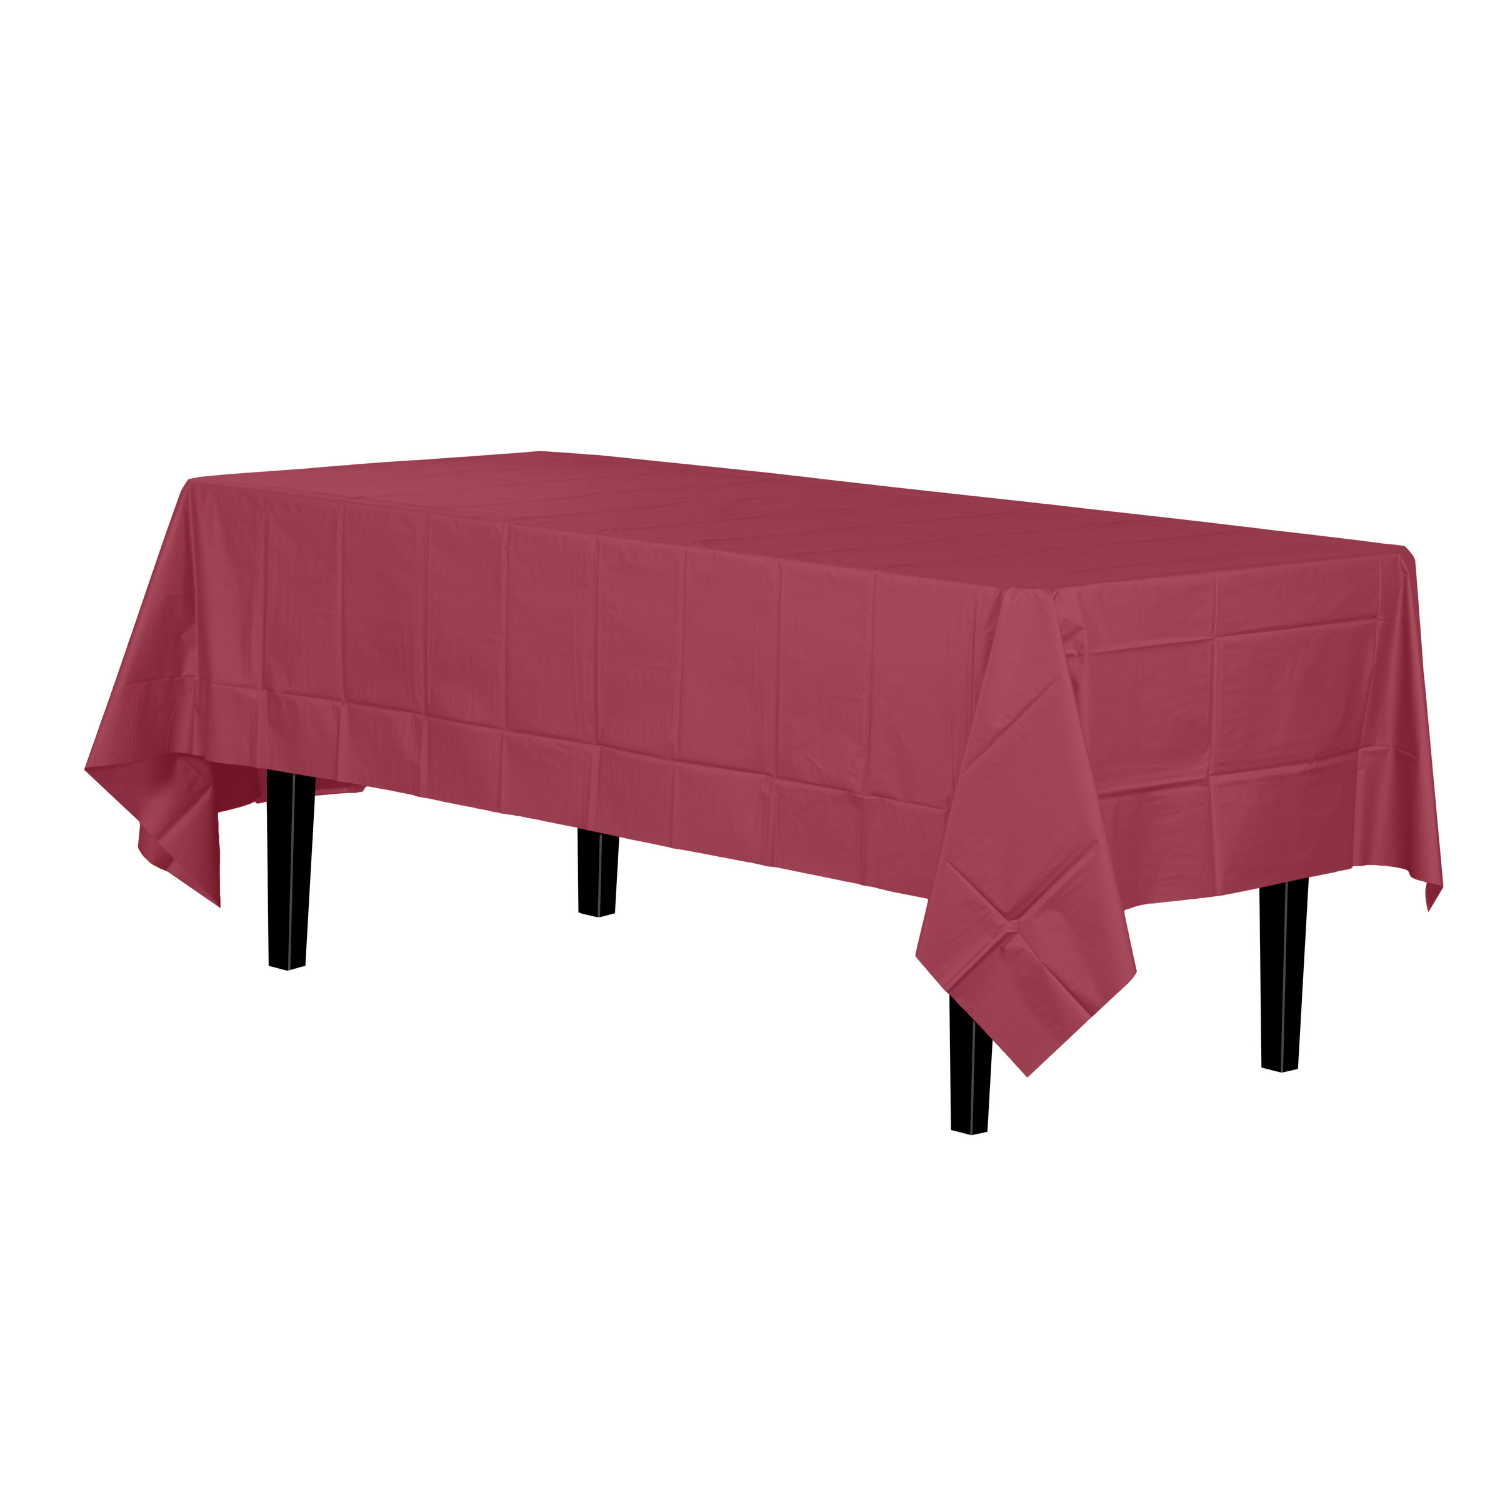 Premium Burgundy Plastic Tablecloth | 12 Count